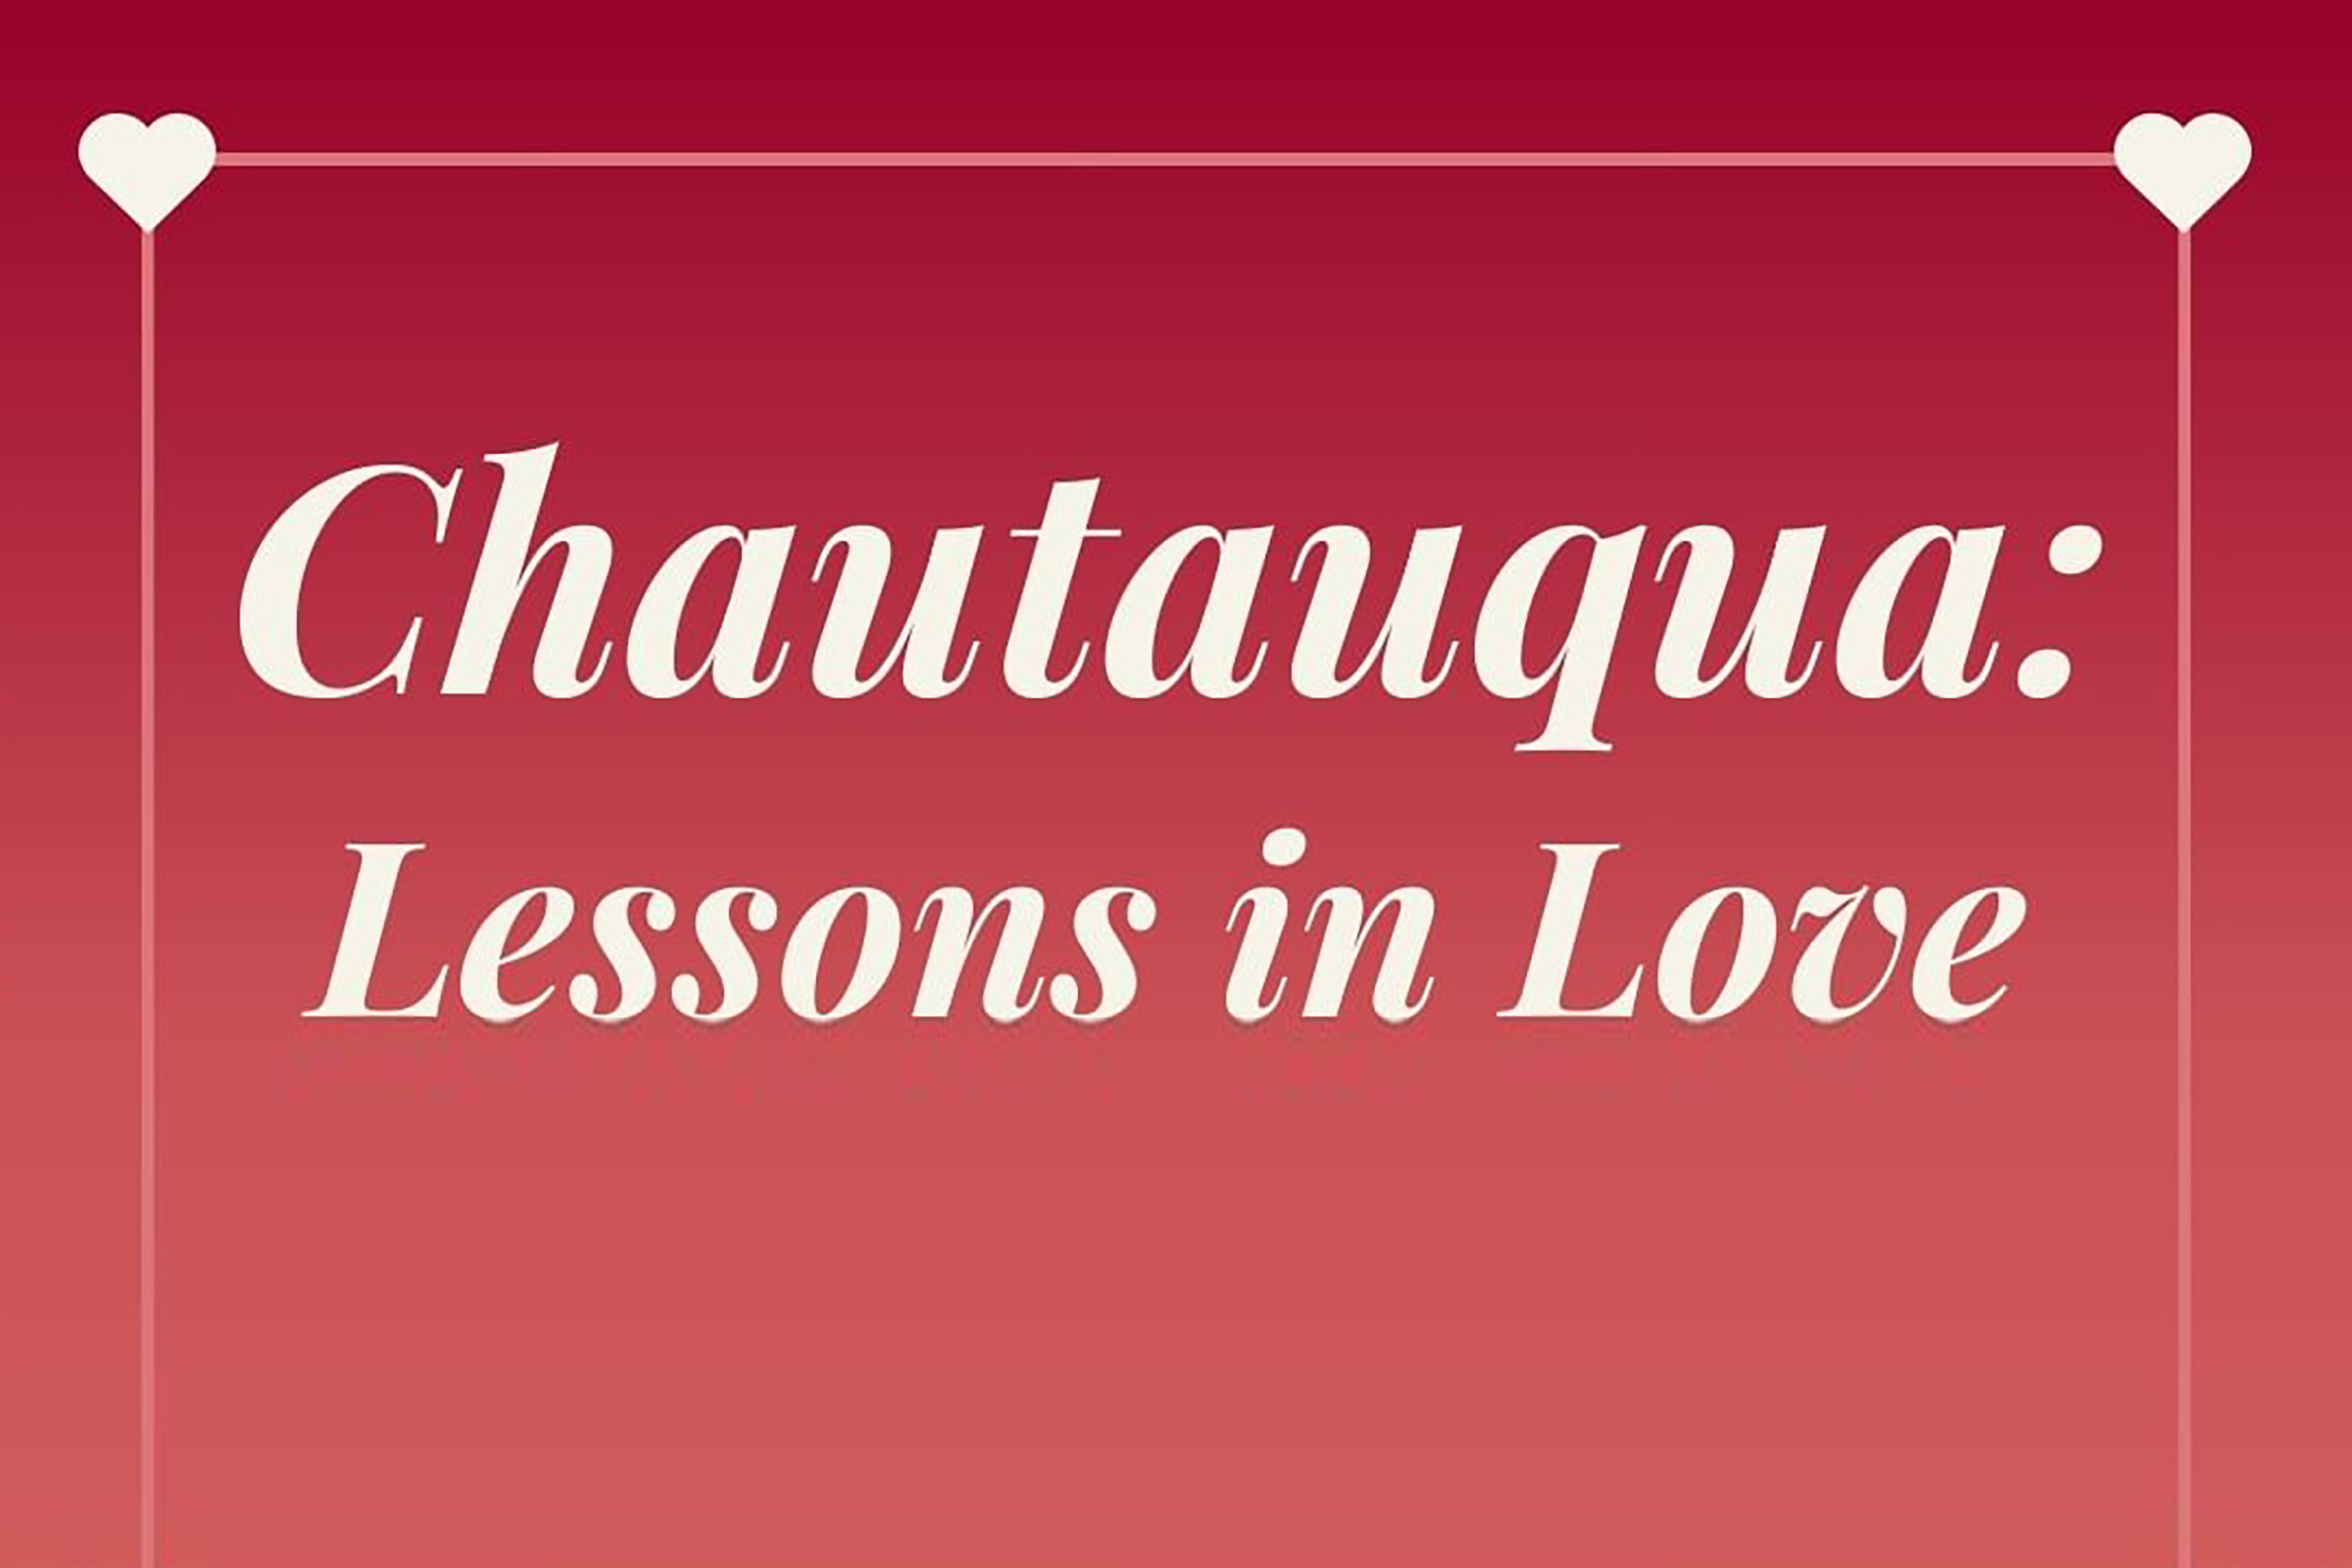 Chautauqua: Lessons in Love